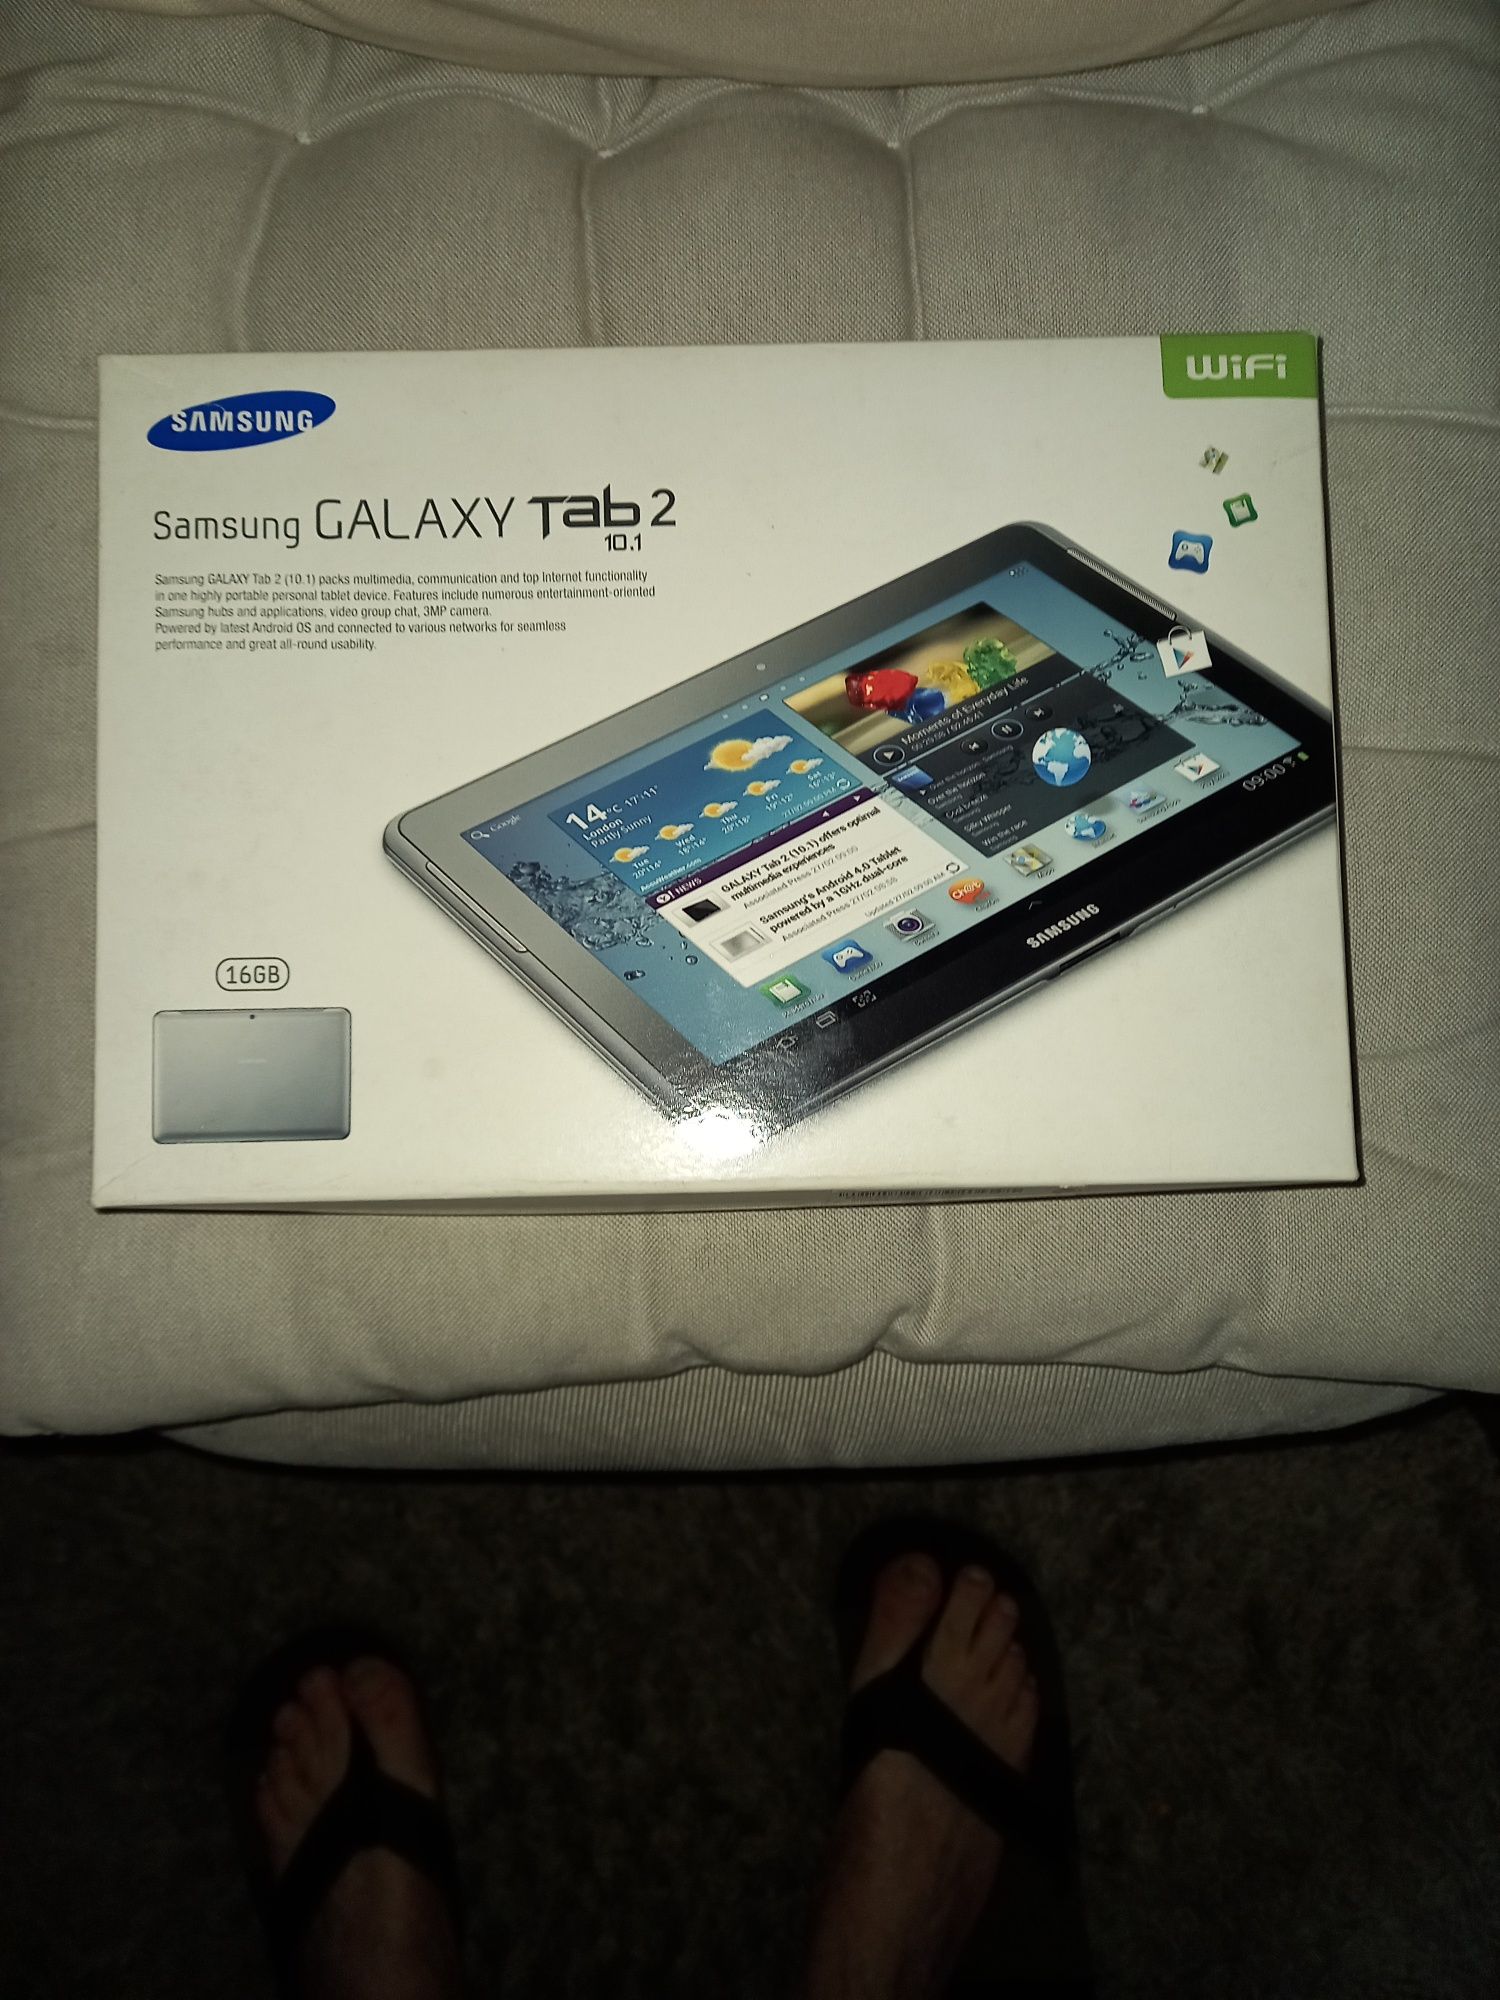 Samsung galaxy tab 2 P5110 10.1"